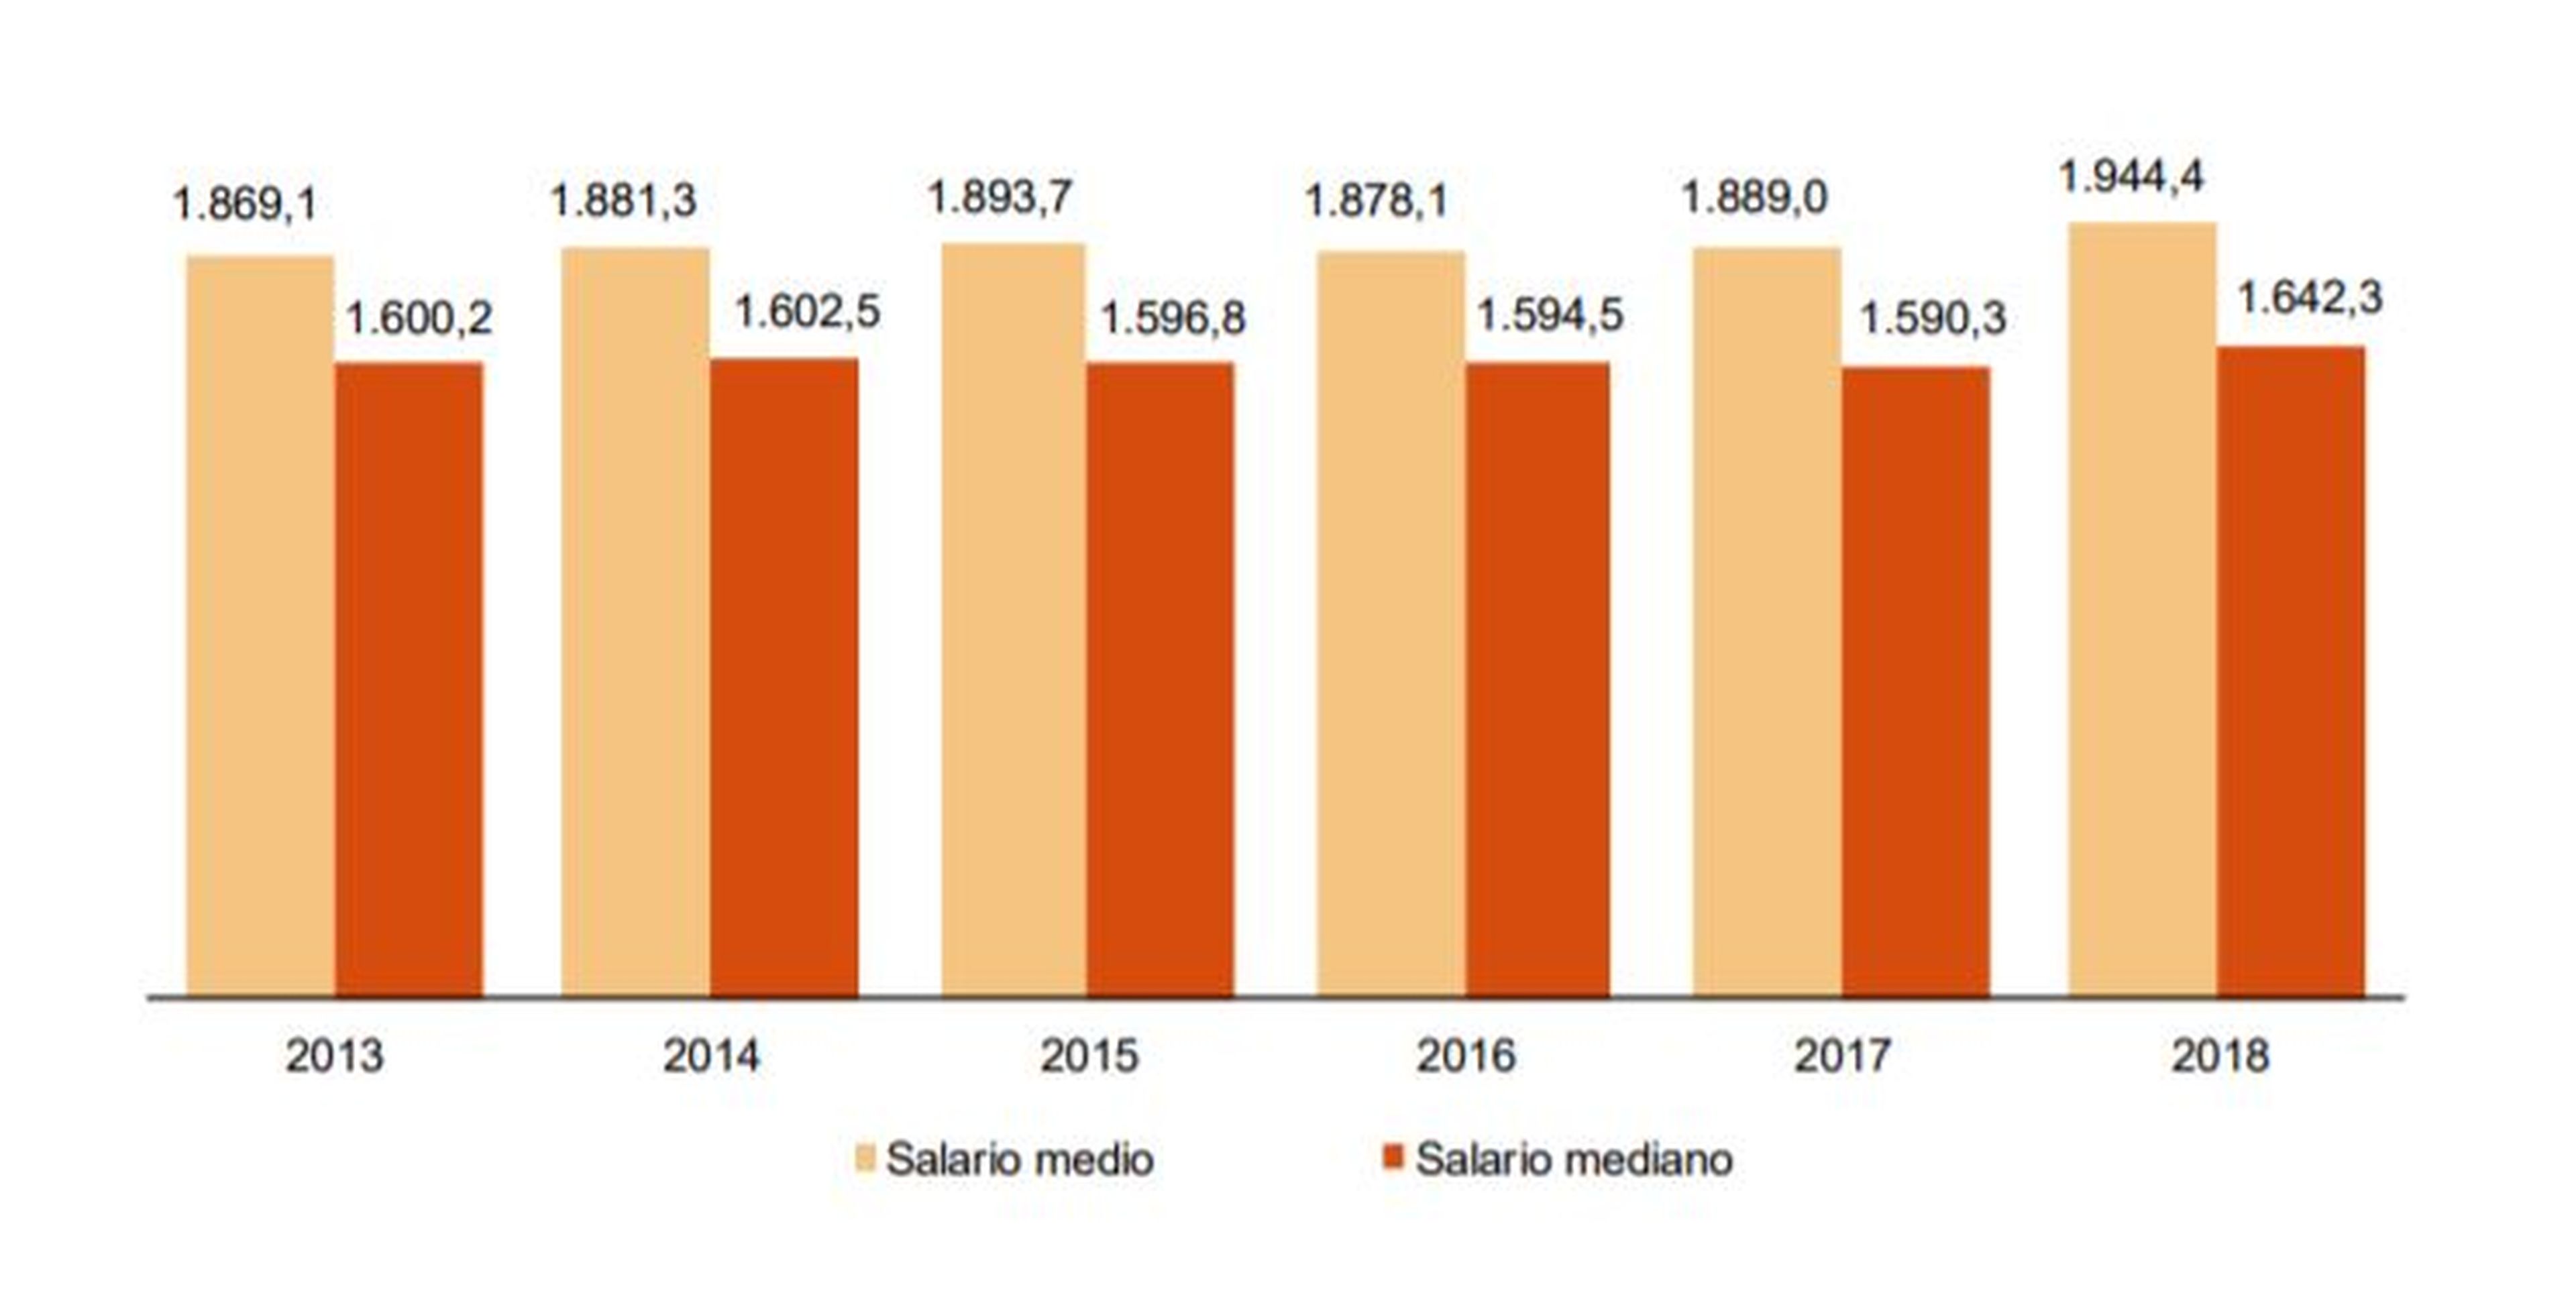 Salario medio y mediano desde 2013